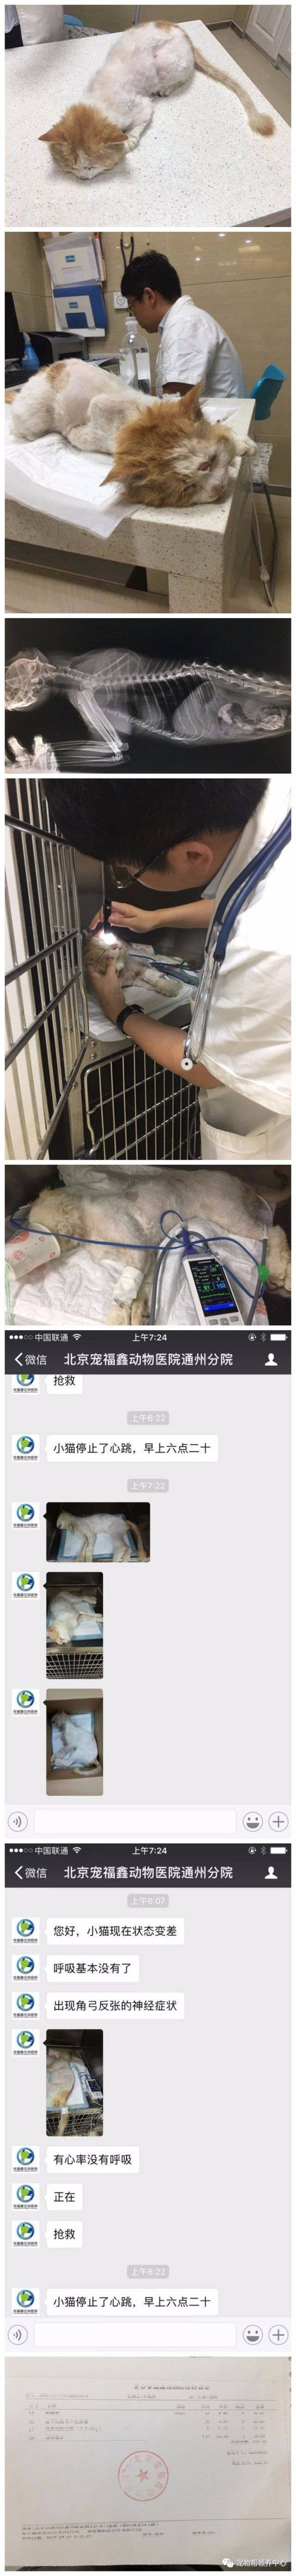 42元 17年7月支出情况 救助对象一:北京车撞流浪猫 救治医院:北京宠